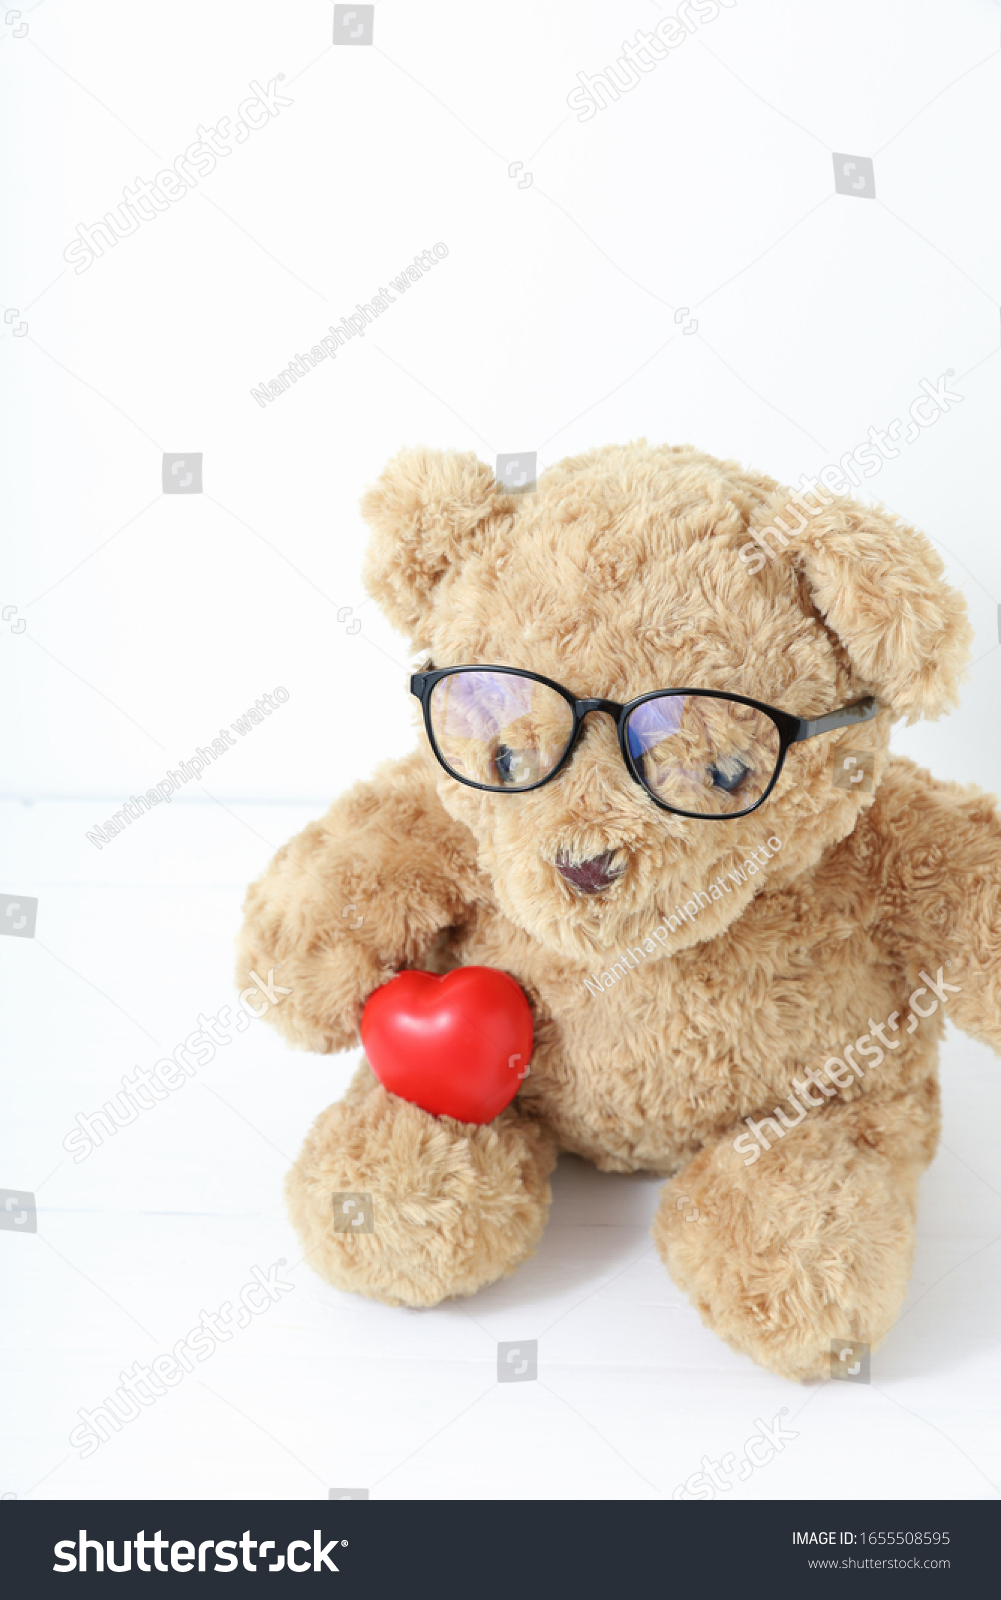 teddy bear wearing glasses